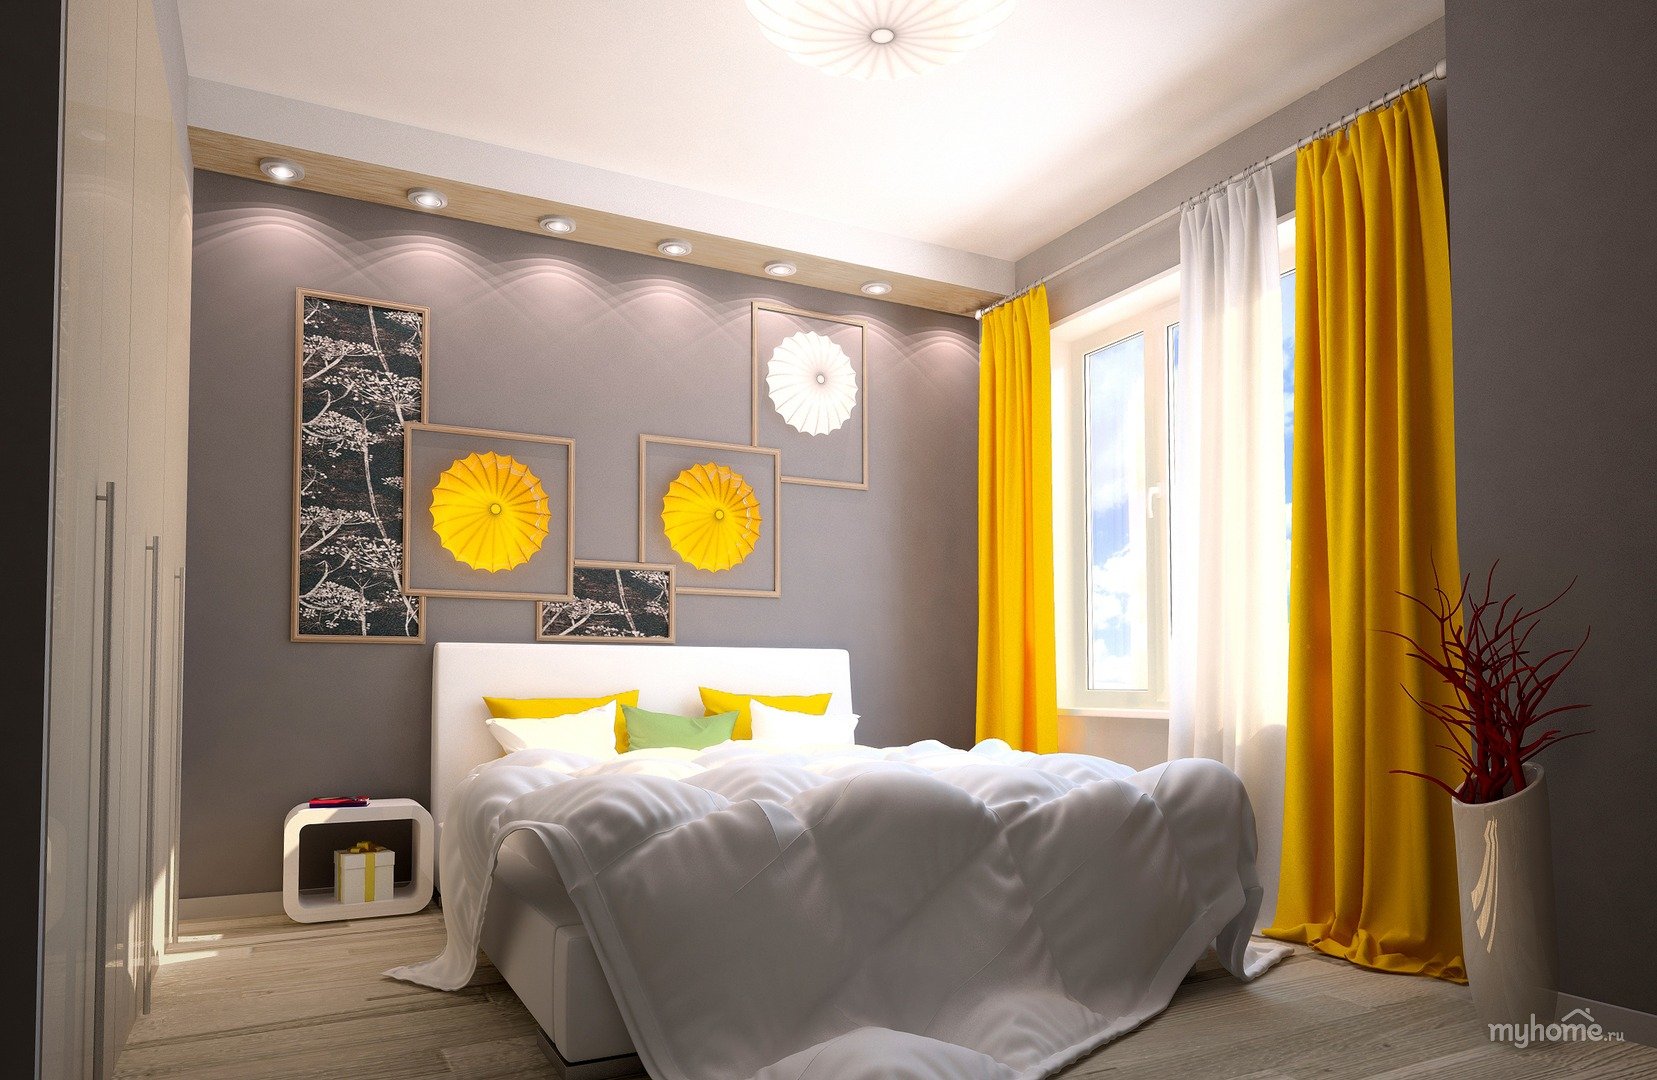 Яркость в комнате 3. Спальня в серо желтых тонах. Спальня с желтыми акцентами. Желтые шторы в интерьере спальни. Горчичный цвет в интерьере спальни.